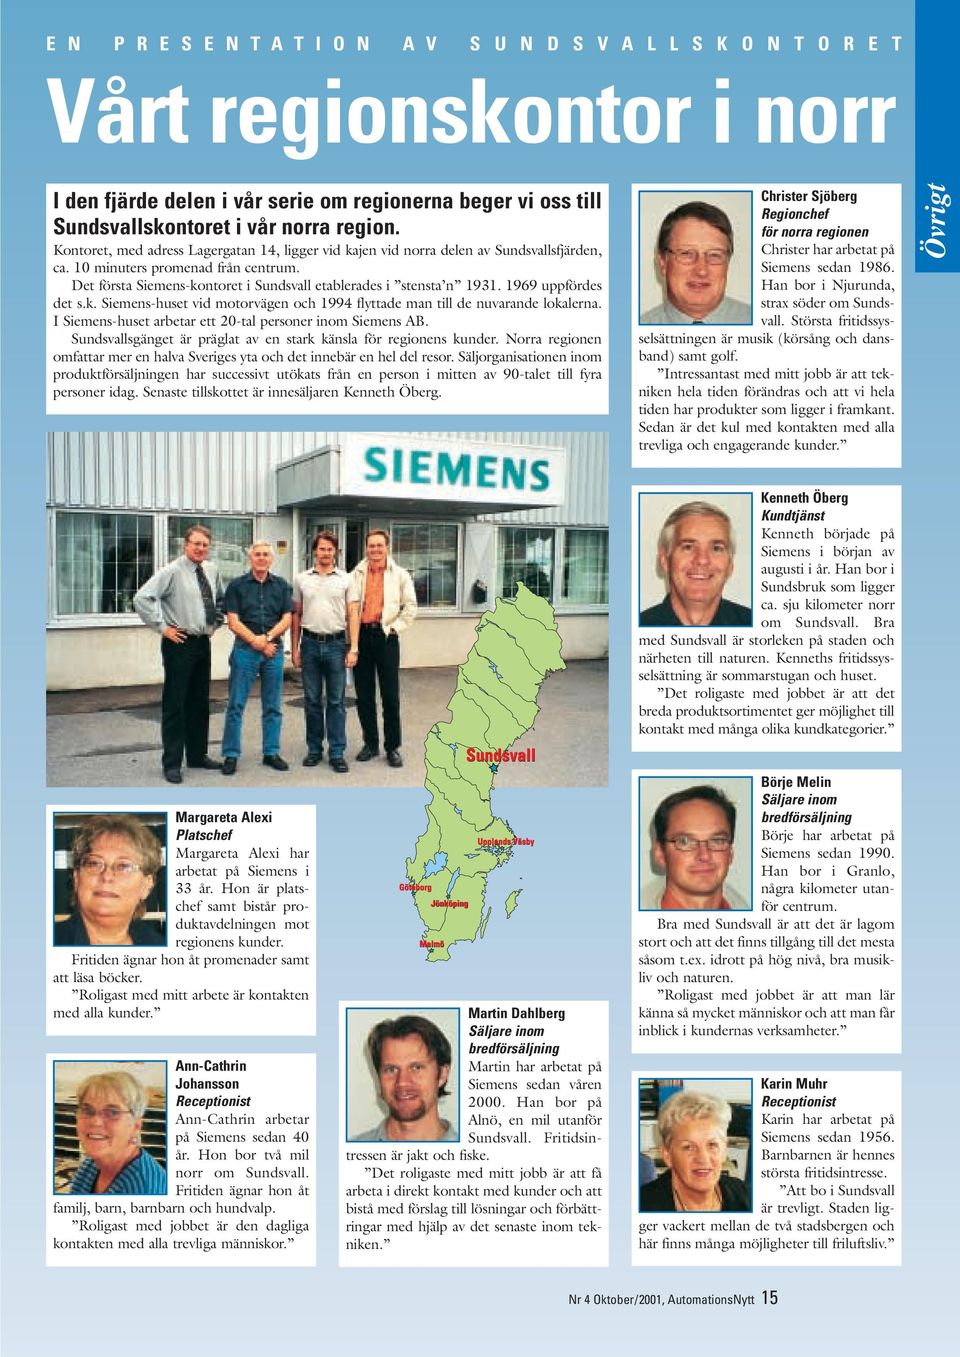 1969 uppfördes det s.k. Siemens-huset vid motorvägen och 1994 flyttade man till de nuvarande lokalerna. I Siemens-huset arbetar ett 20-tal personer inom Siemens AB.